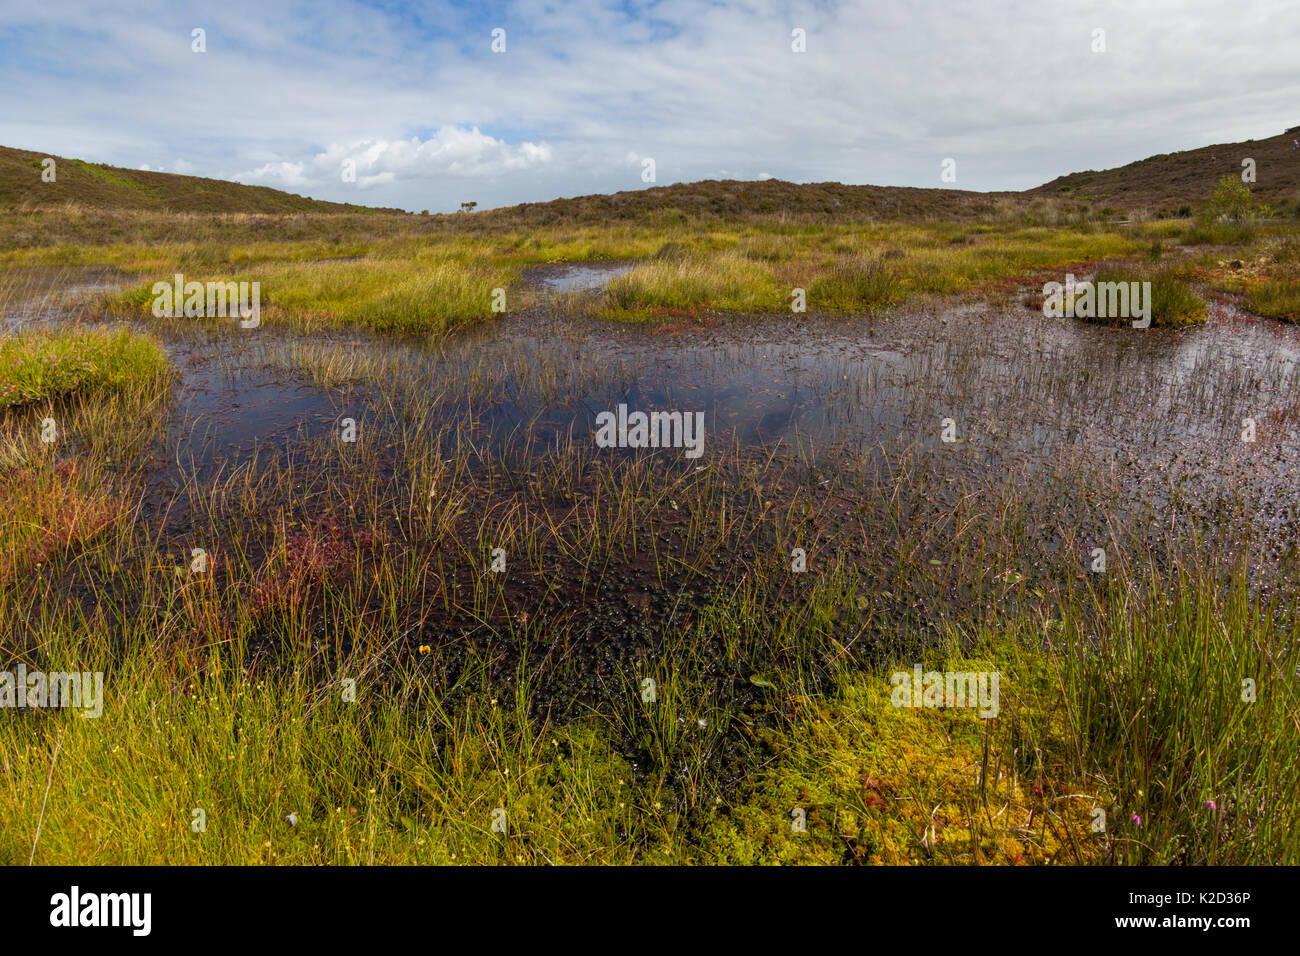 La lande extérieure entourée de sphaigne. Godlingston Heath National Nature Reserve, Dorset, UK. Août 2015. Banque D'Images